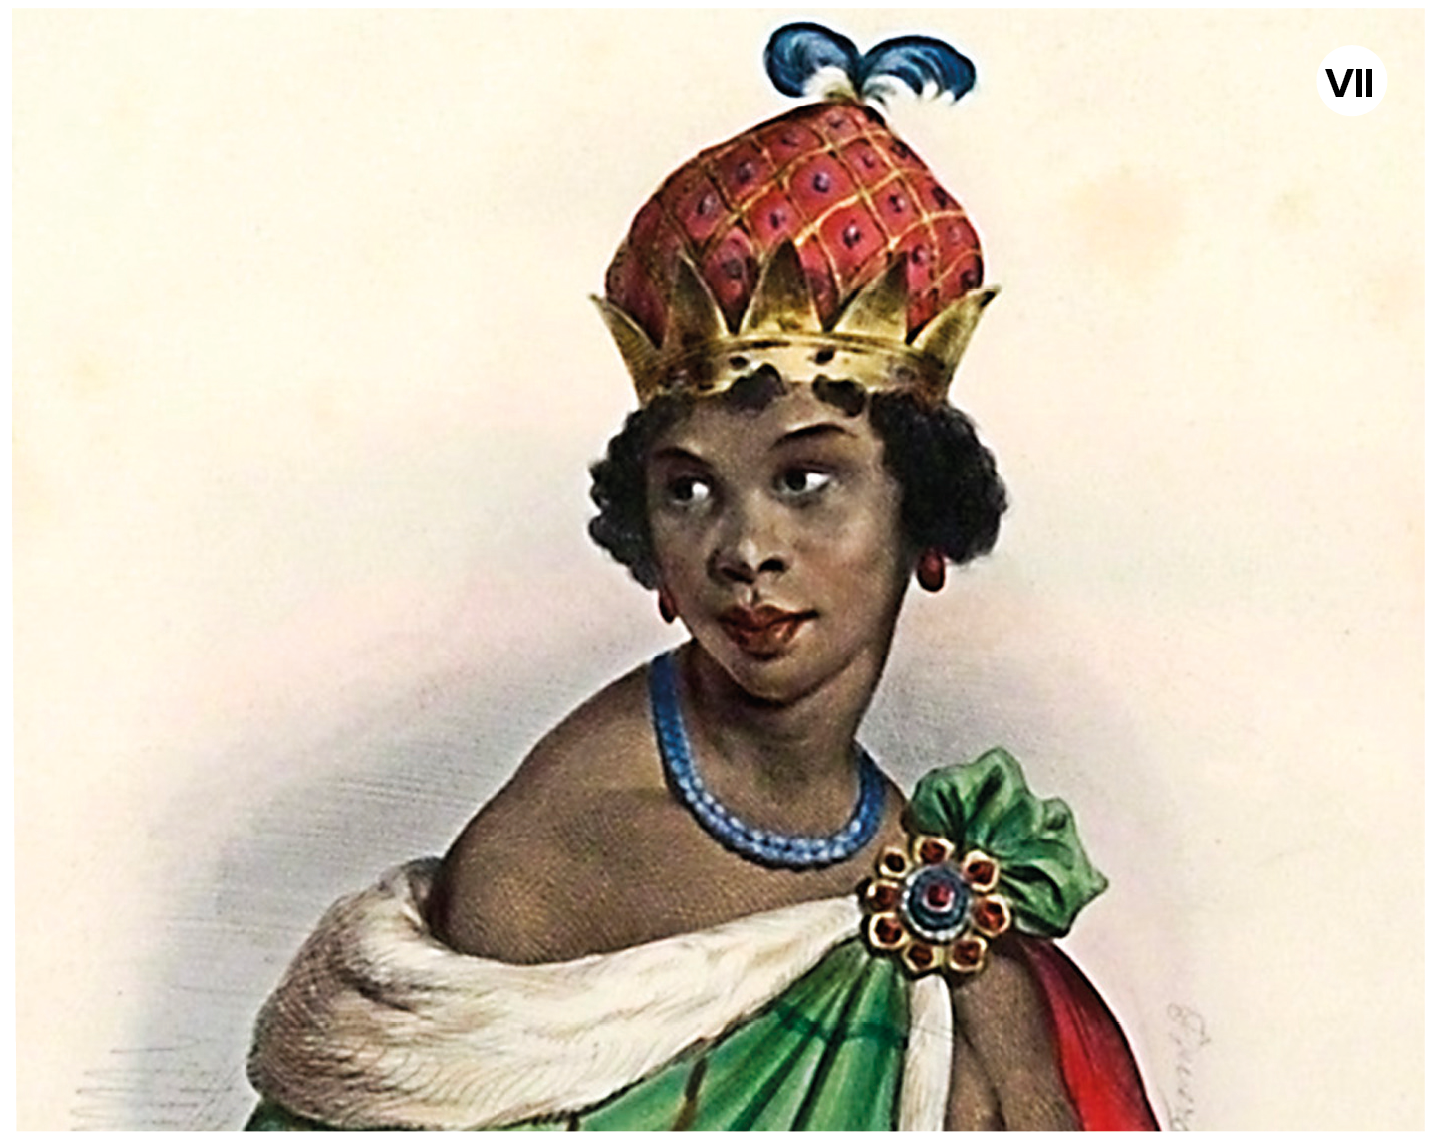 Imagem sete. Pintura. Uma mulher negra vista dos ombros para cima, de cabelos pretos curtos encaracolados, com colar azul, roupa verde, de gola branca de pelos e sobre a cabeça uma coroa dourada com parte vermelha e plumas azuis. Ela olha para a esquerda, ao longe.